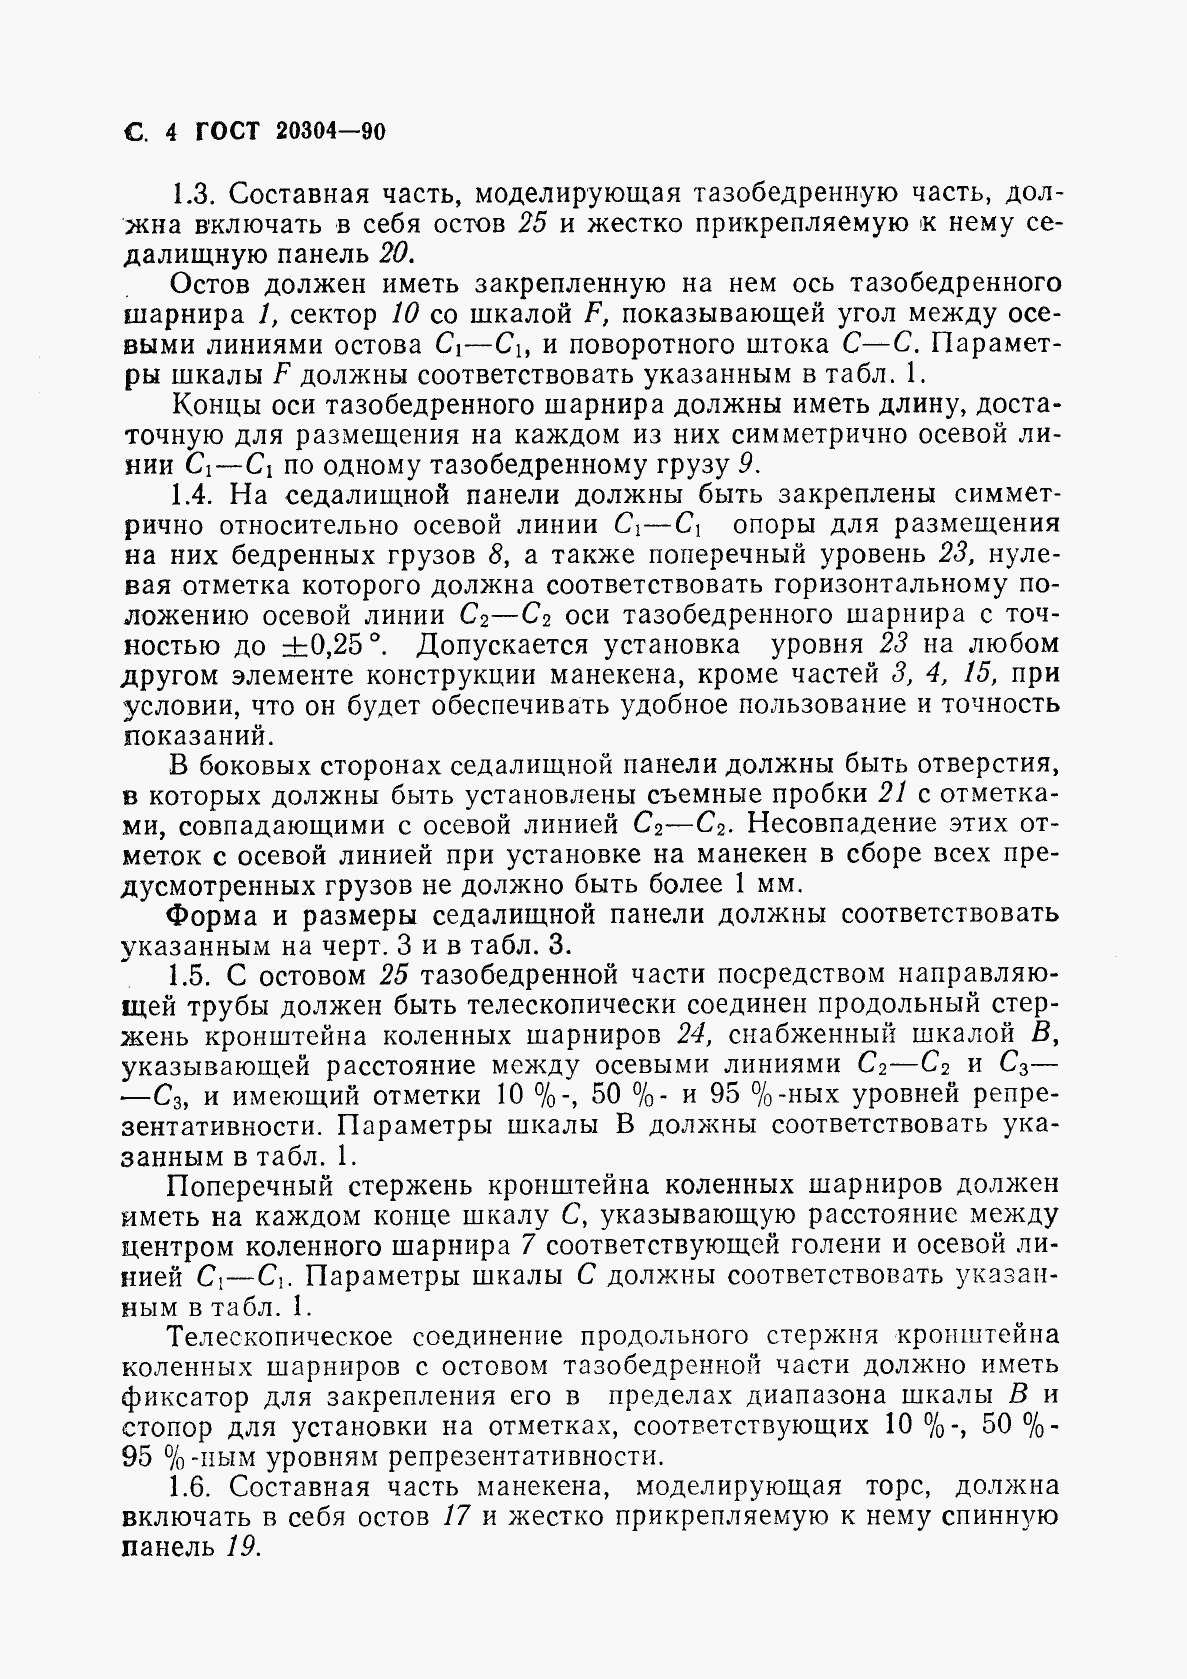 ГОСТ 20304-90, страница 5